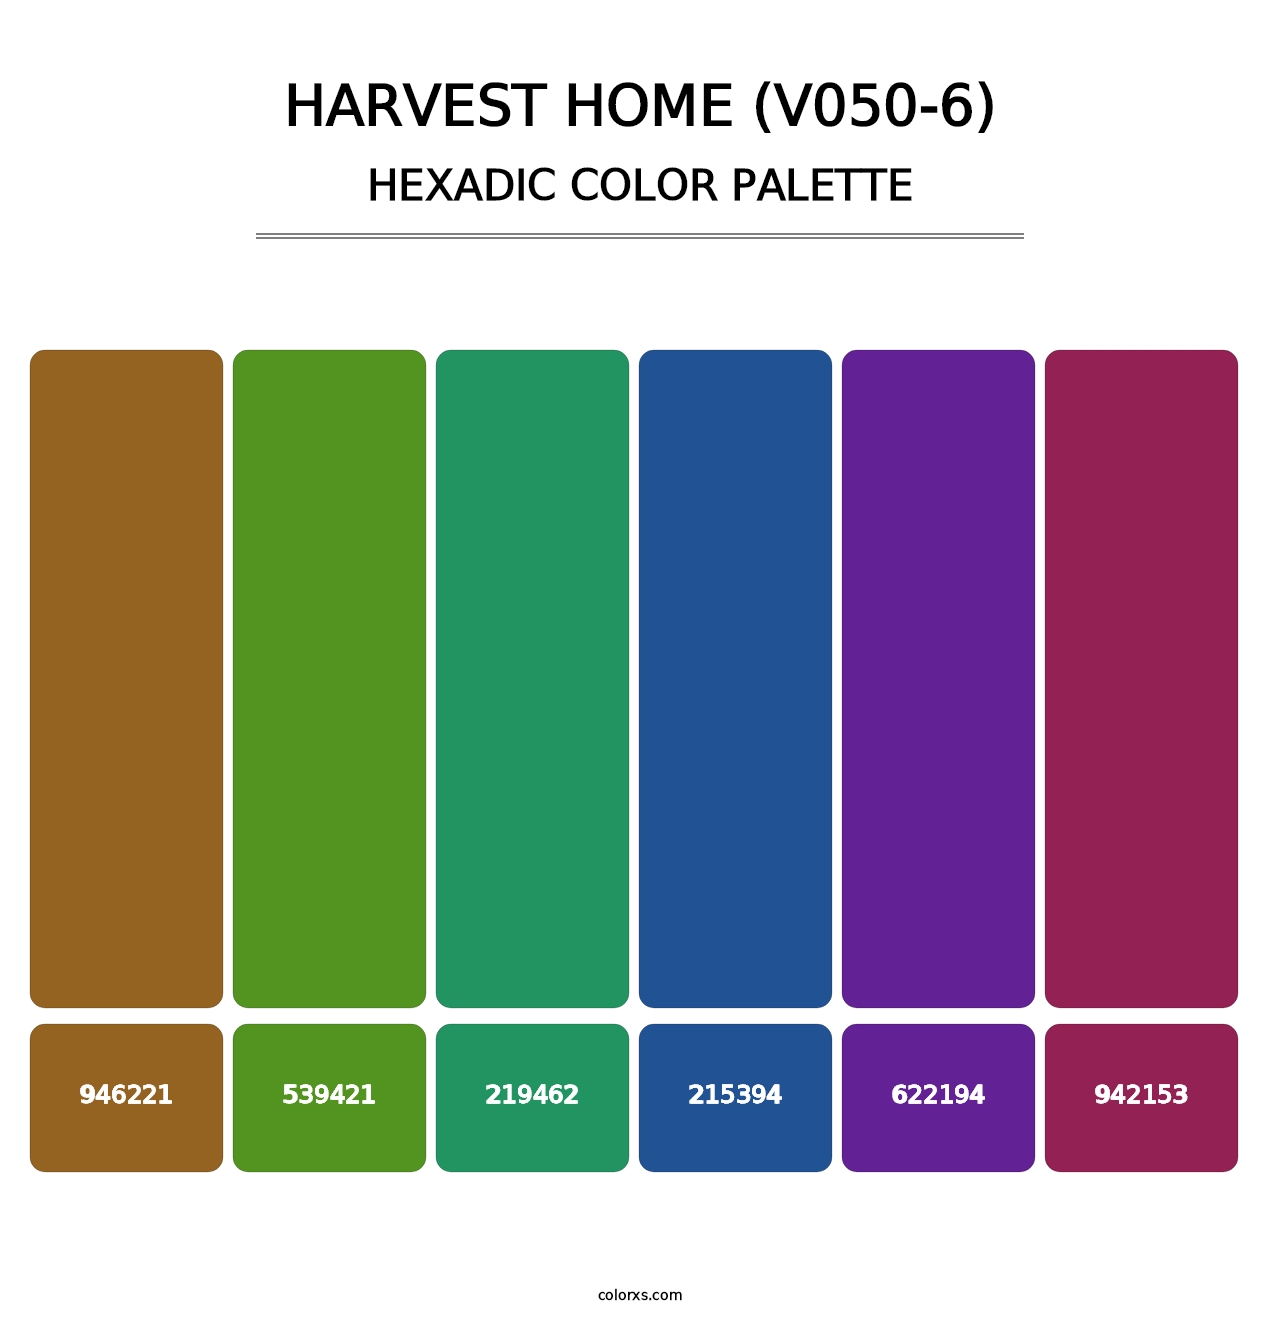 Harvest Home (V050-6) - Hexadic Color Palette